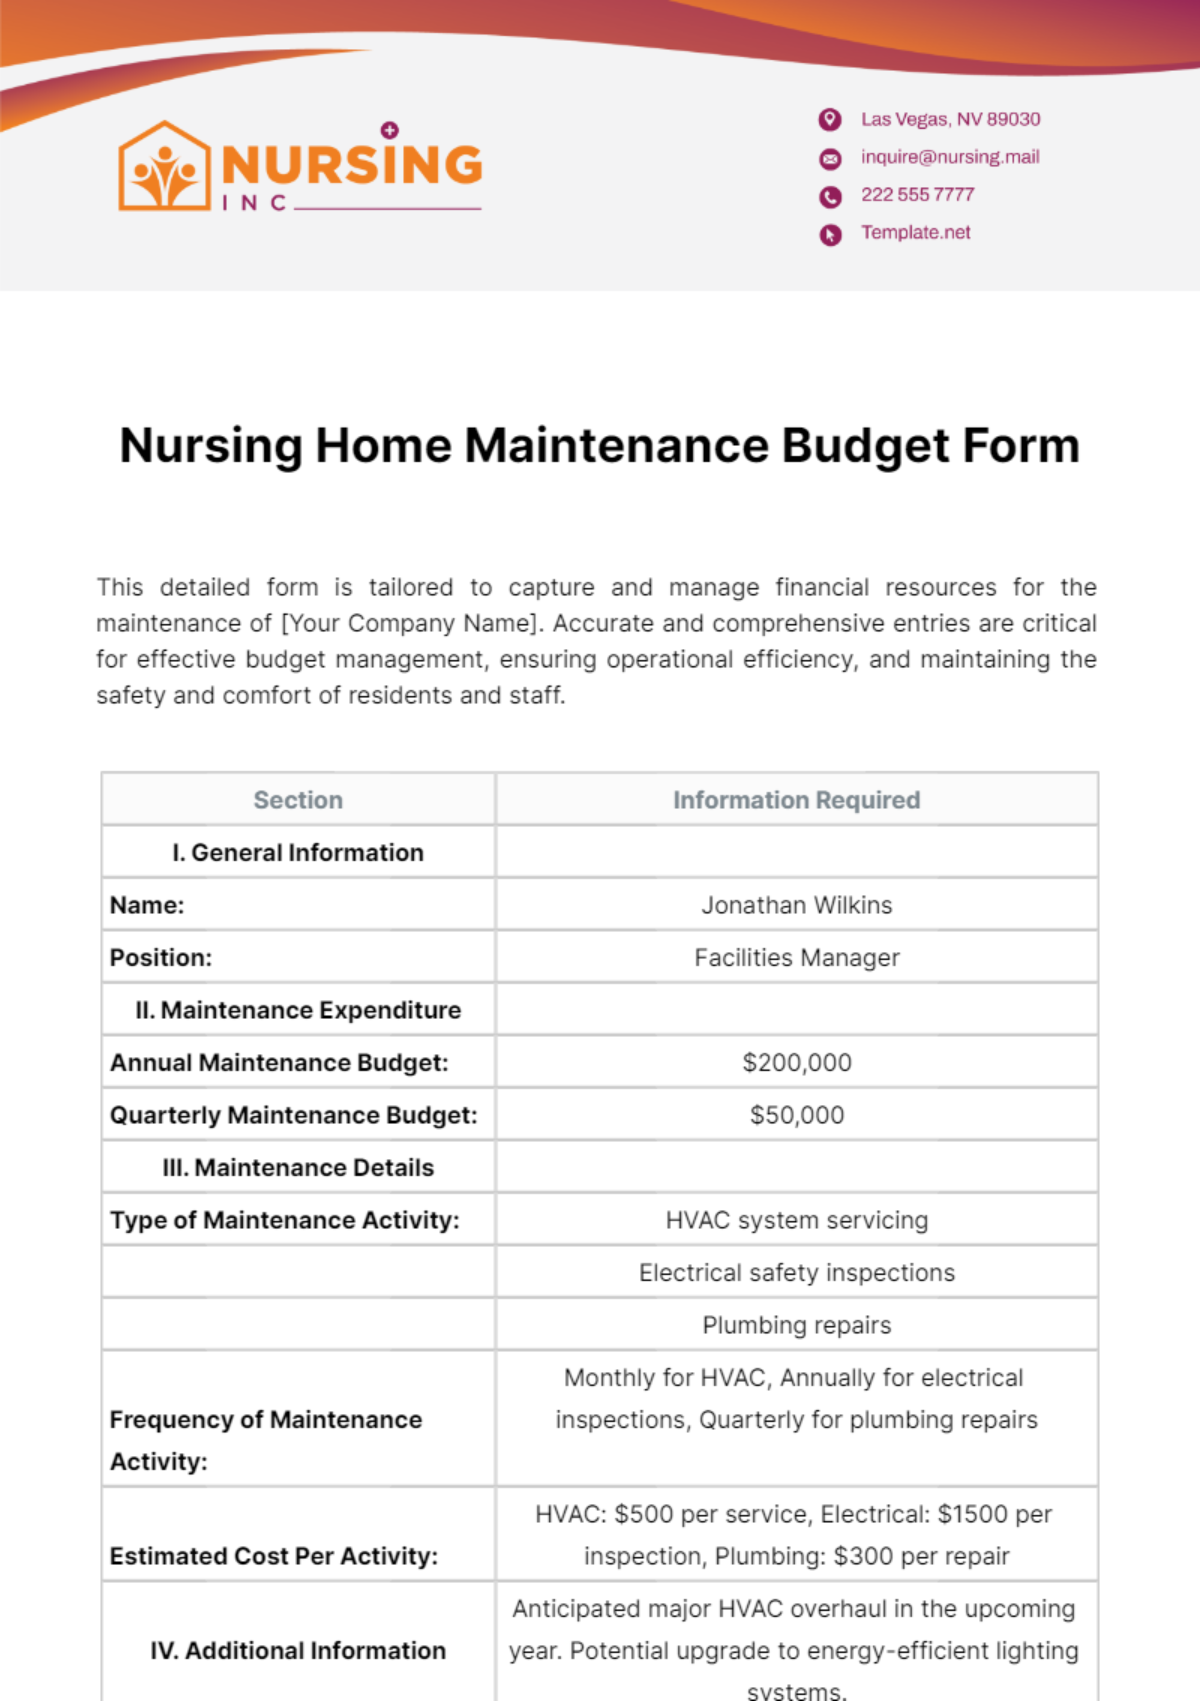 Nursing Home Maintenance Budget Form Template